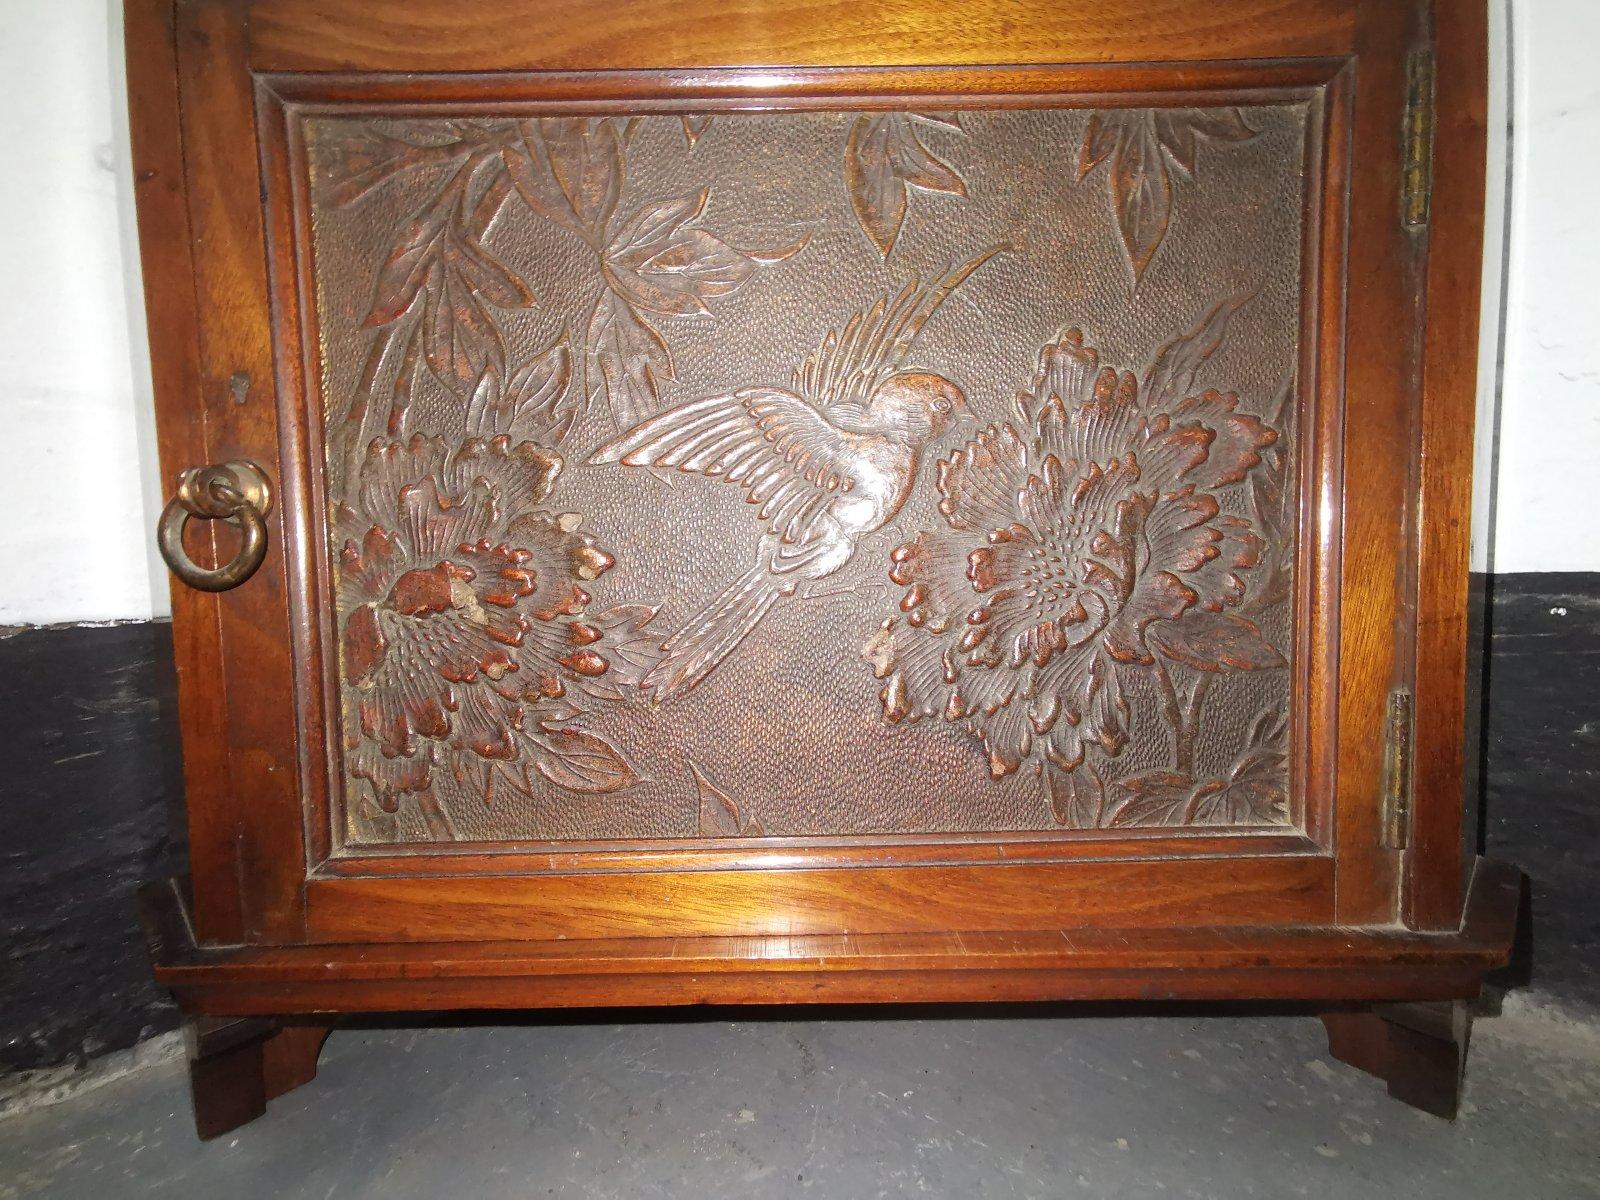 Liberty & Co.
Ein seltener englischer Nussbaum-Eckschrank der Ästhetischen Bewegung mit geprägtem Lederpaneel an der Tür, das einen über einer Chrysantheme schwebenden Vogel darstellt. Die Tür ist mit dem für Liberty typischen Ringgriff aus Messing